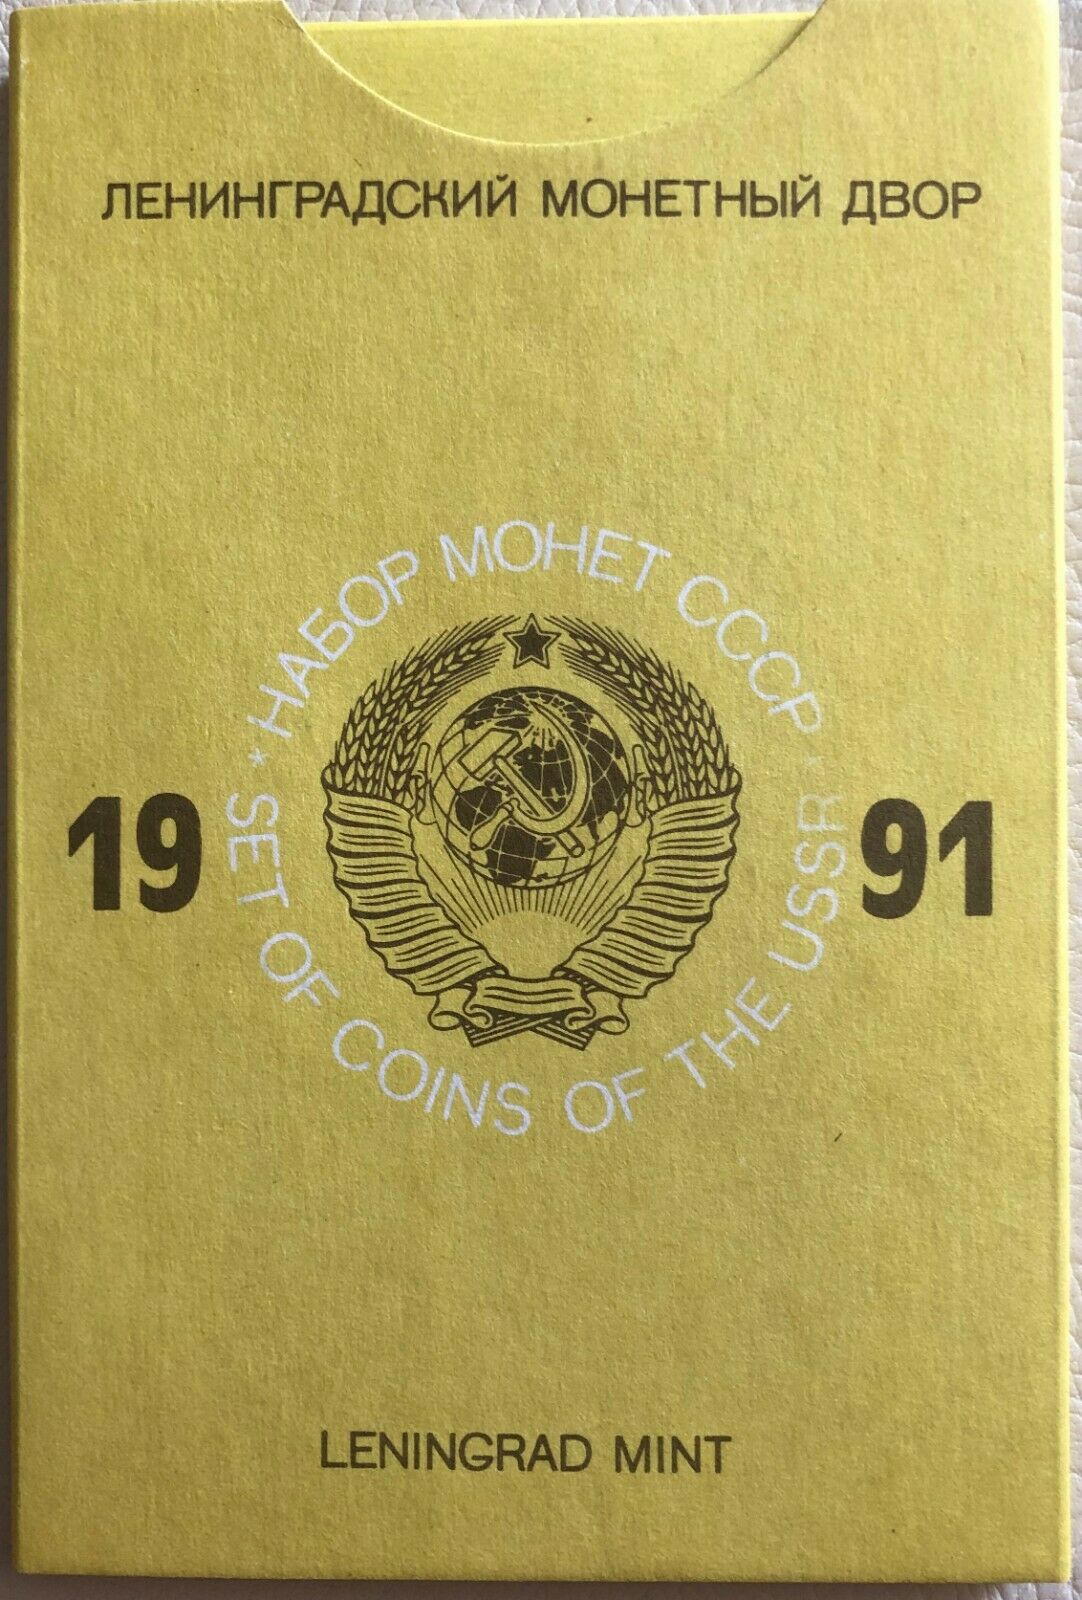 Ussr Set Of Coins 1991 Hard Cover Leningrad Mint